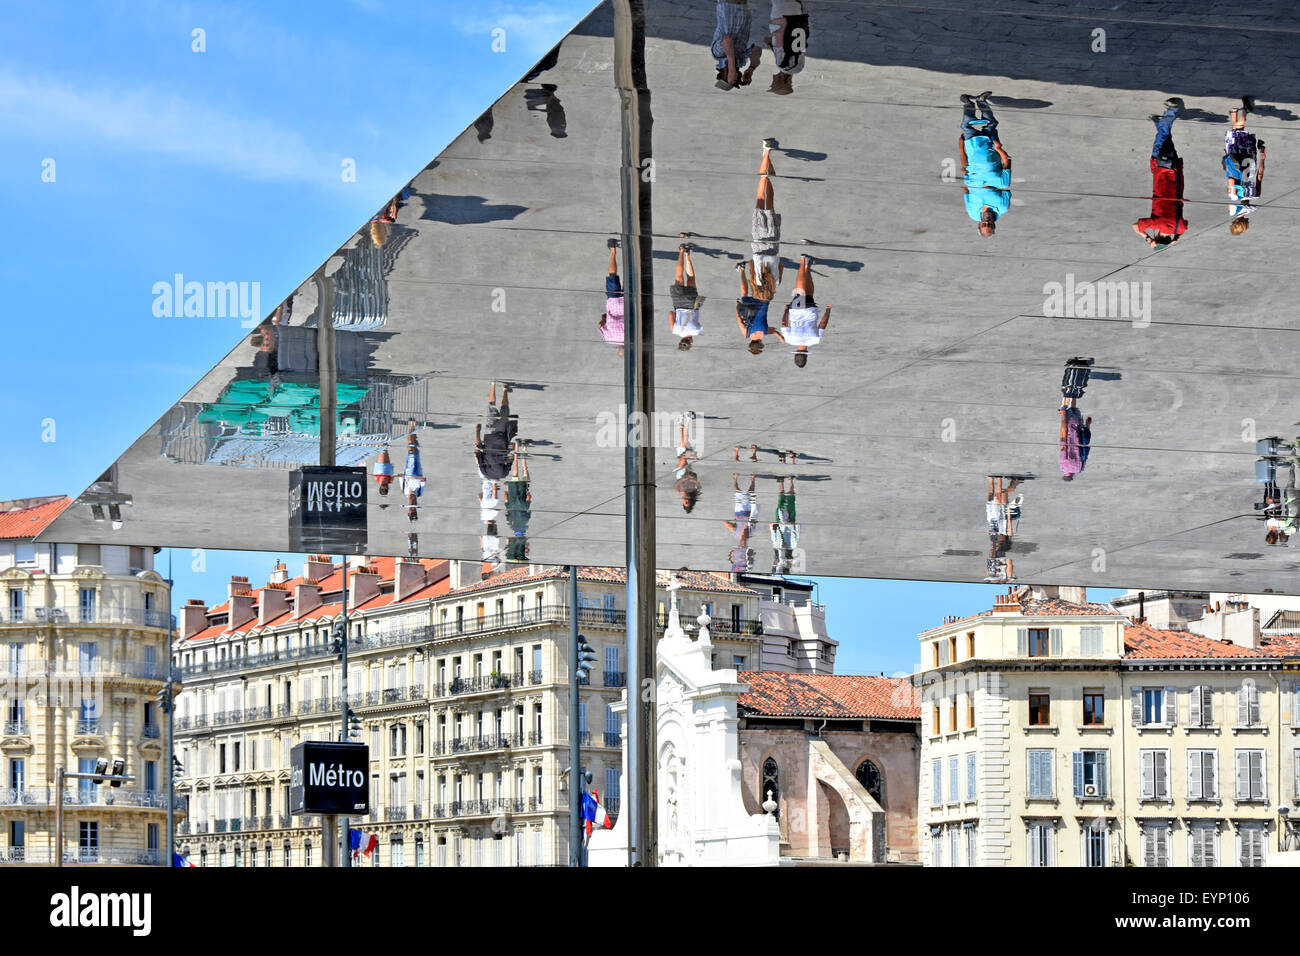 Marsiglia Francia Vieux Port stazione della metropolitana sign & Ombriere specchio con persone riflessioni di immagine sotto Norman promuove la tettoia nel vecchio porto di Marsiglia Foto Stock